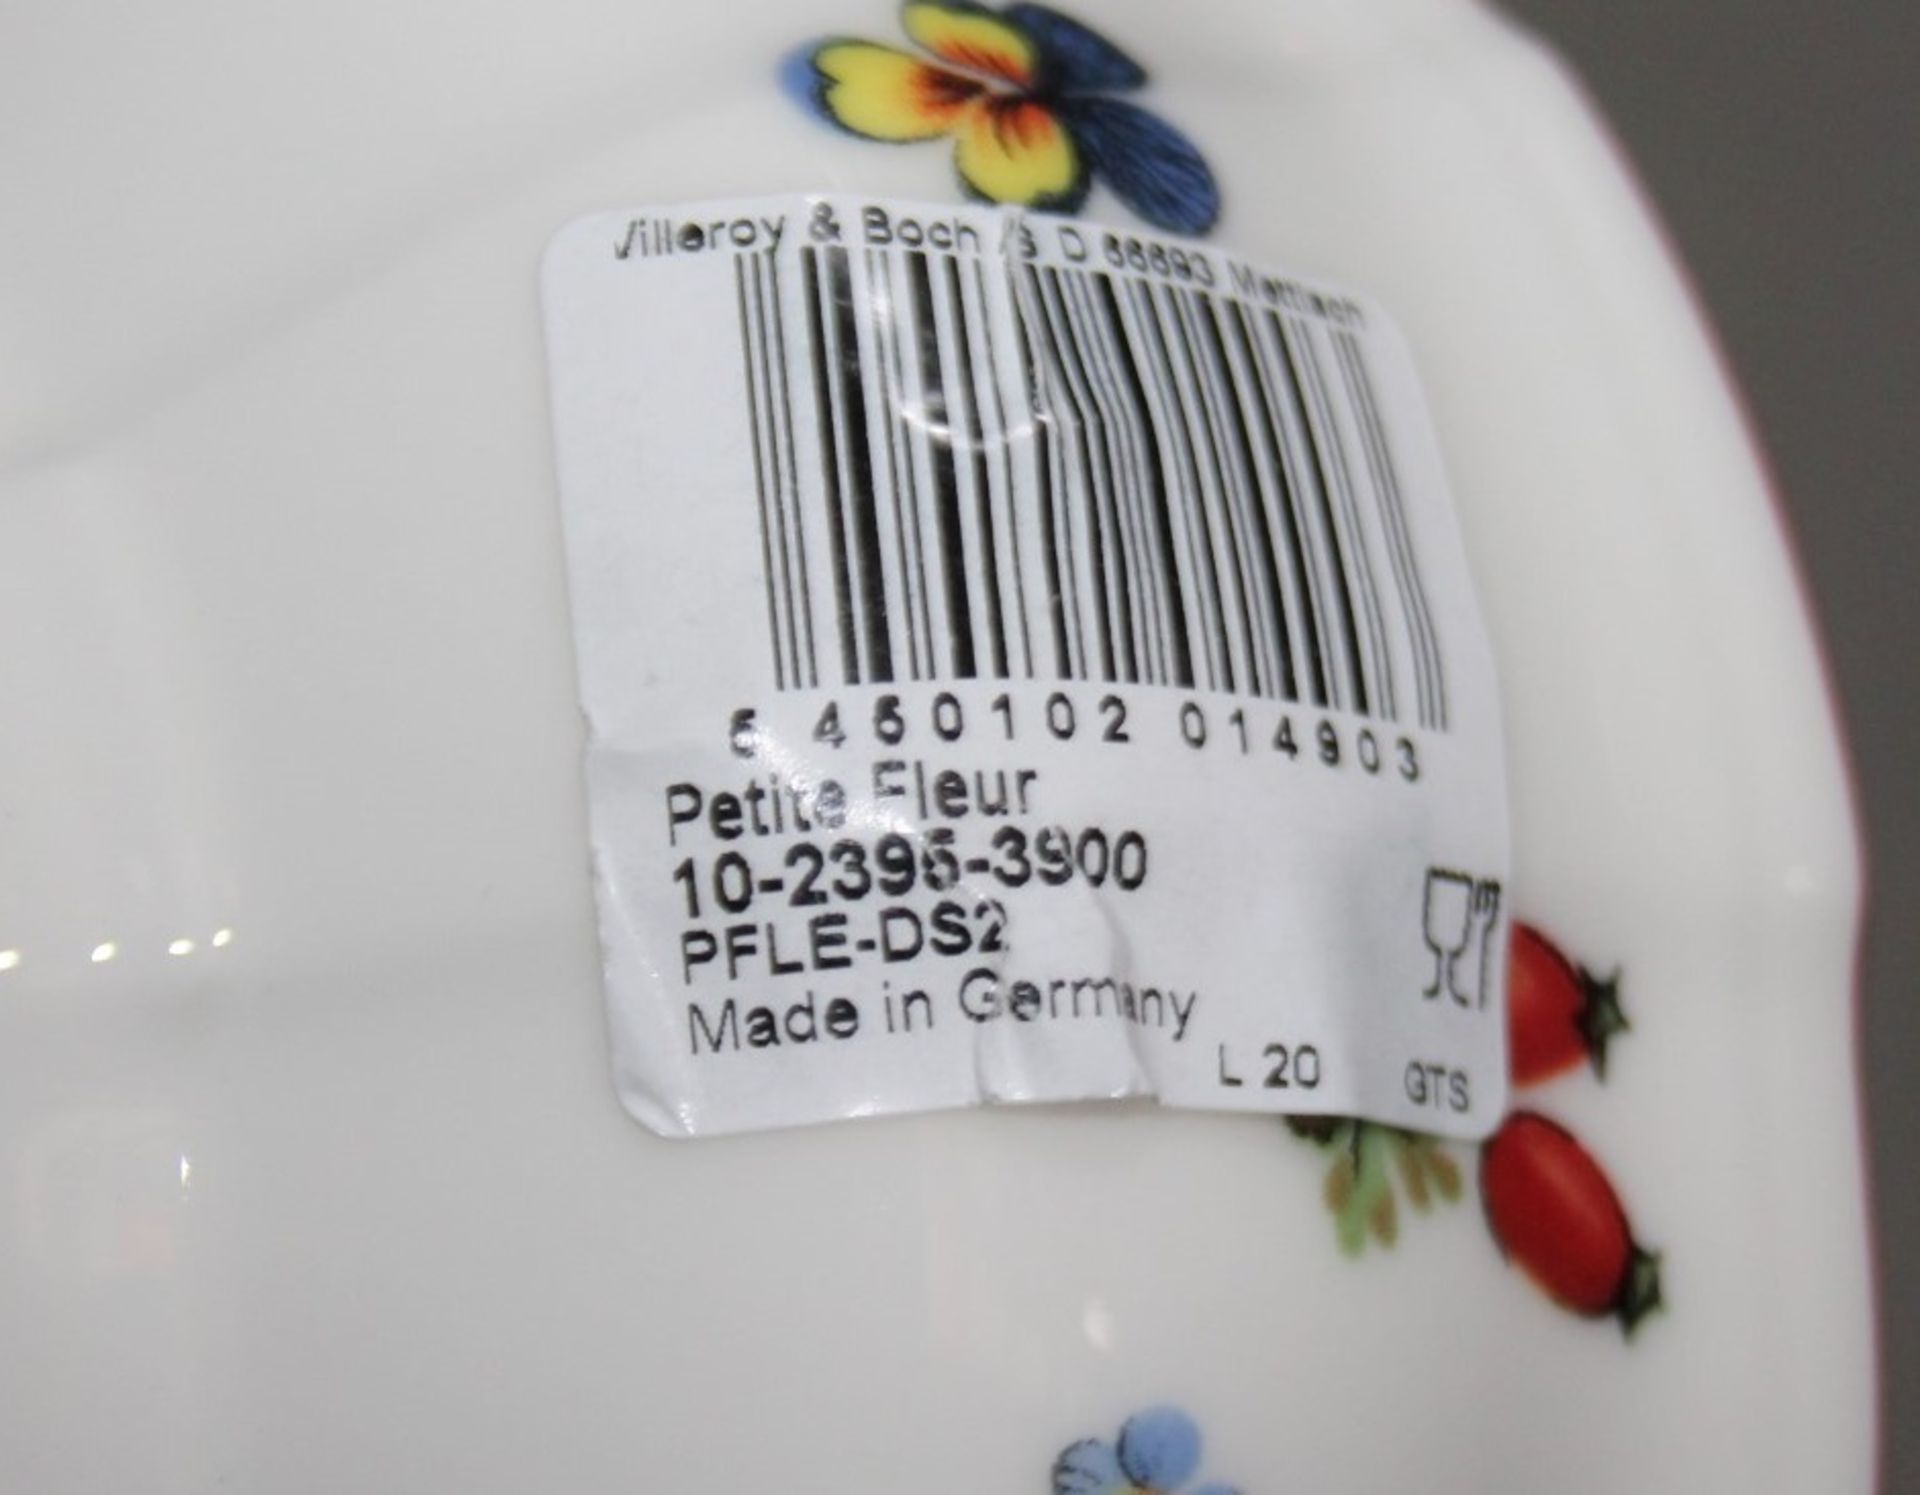 1 x VILLEROY & BOCH 'Petite Fleur' Premium Porcelain Bowl (ø15cm) - Unused Unboxed Stock - Ref: - Image 5 of 5